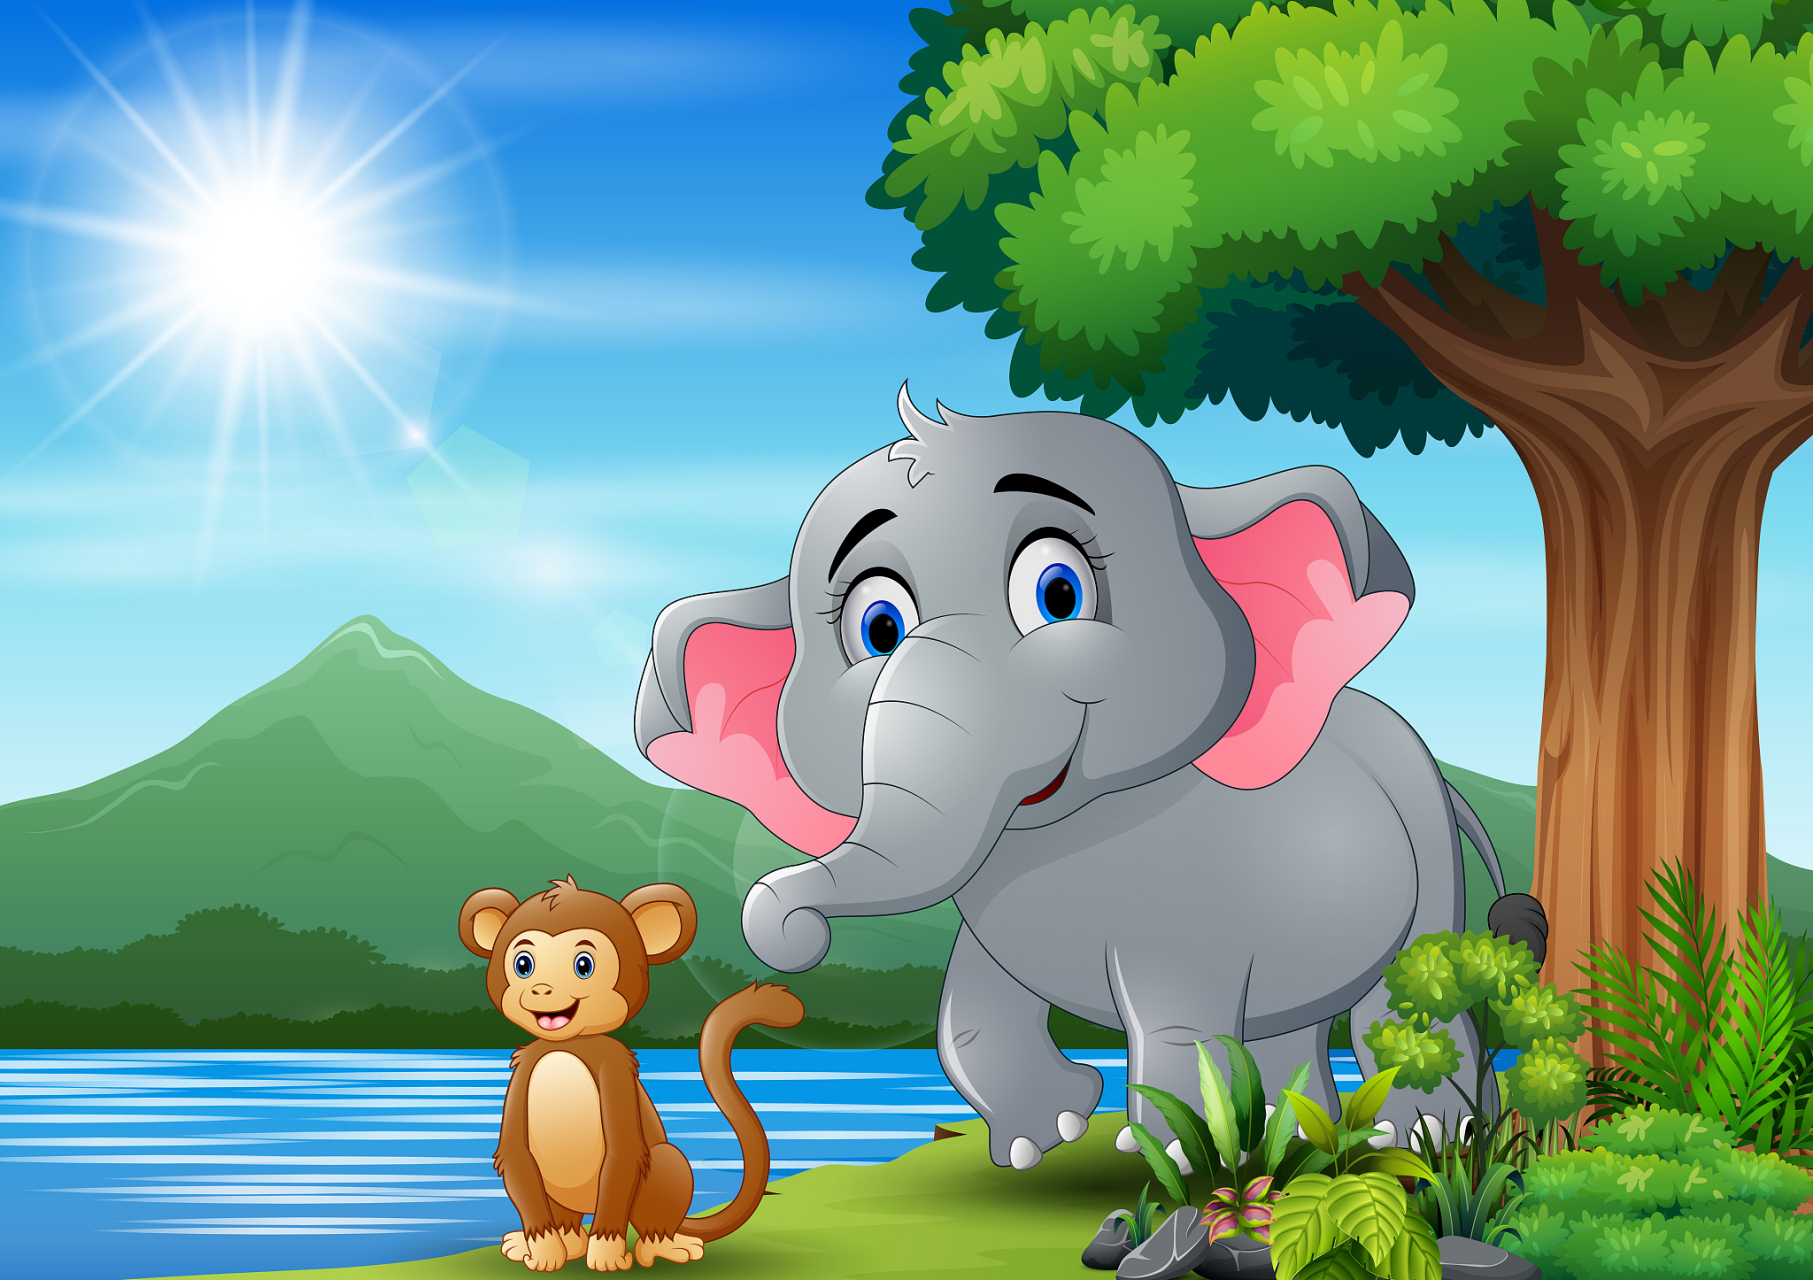 猴子对大象说:你为什么要用鼻子喷水呢?你不觉得很奇怪吗?